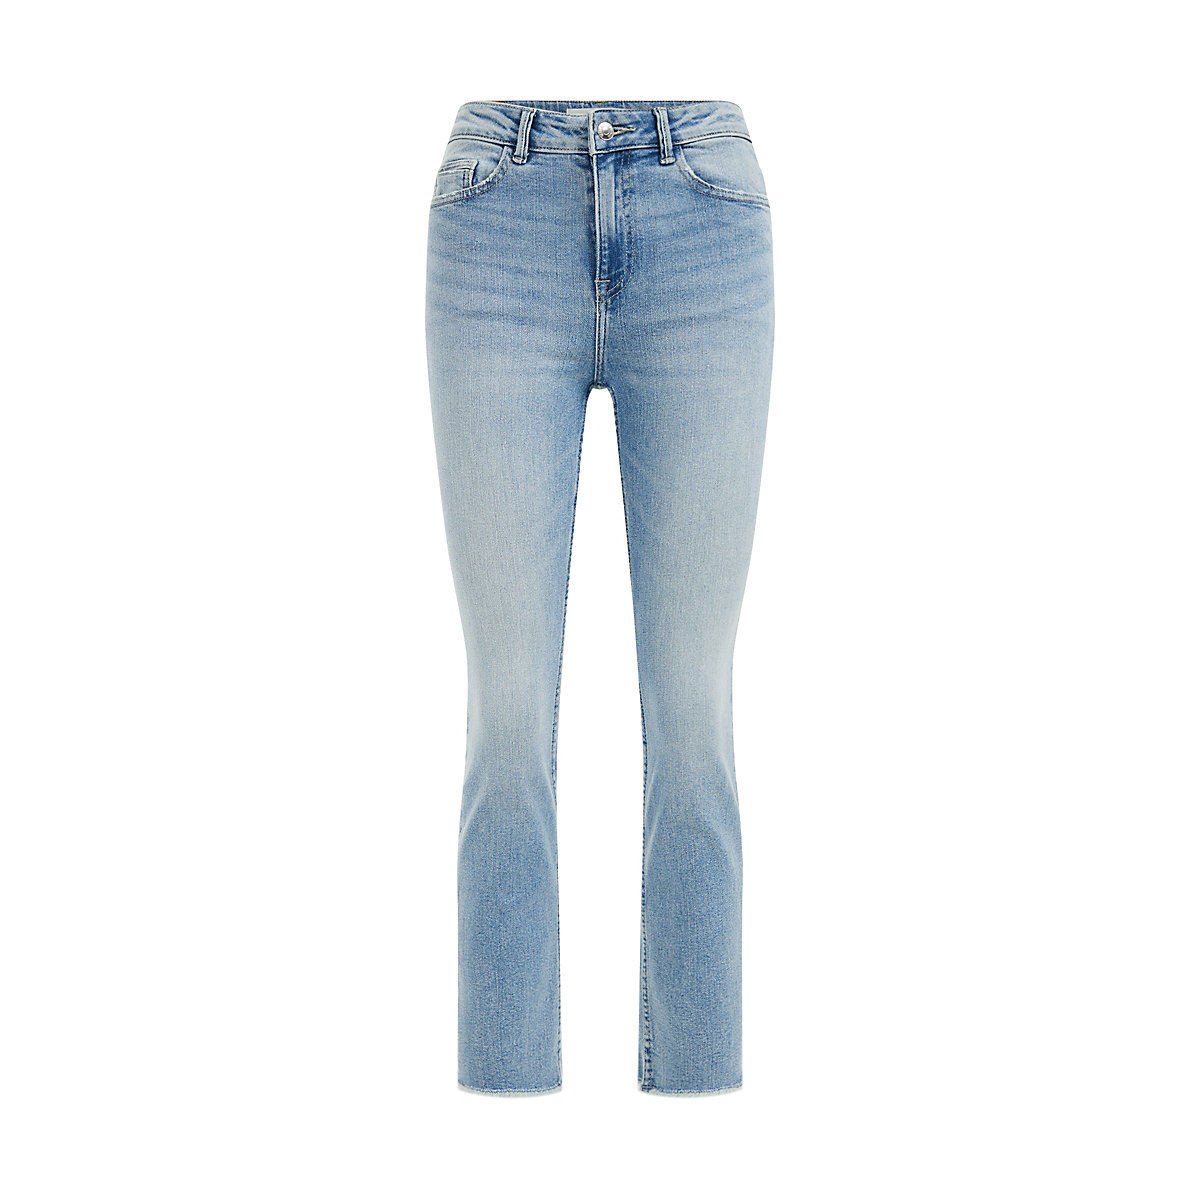 WE Fashion Hochgeschnittene Jeans mit Komfortstretch von Dames Jeanshosen blau